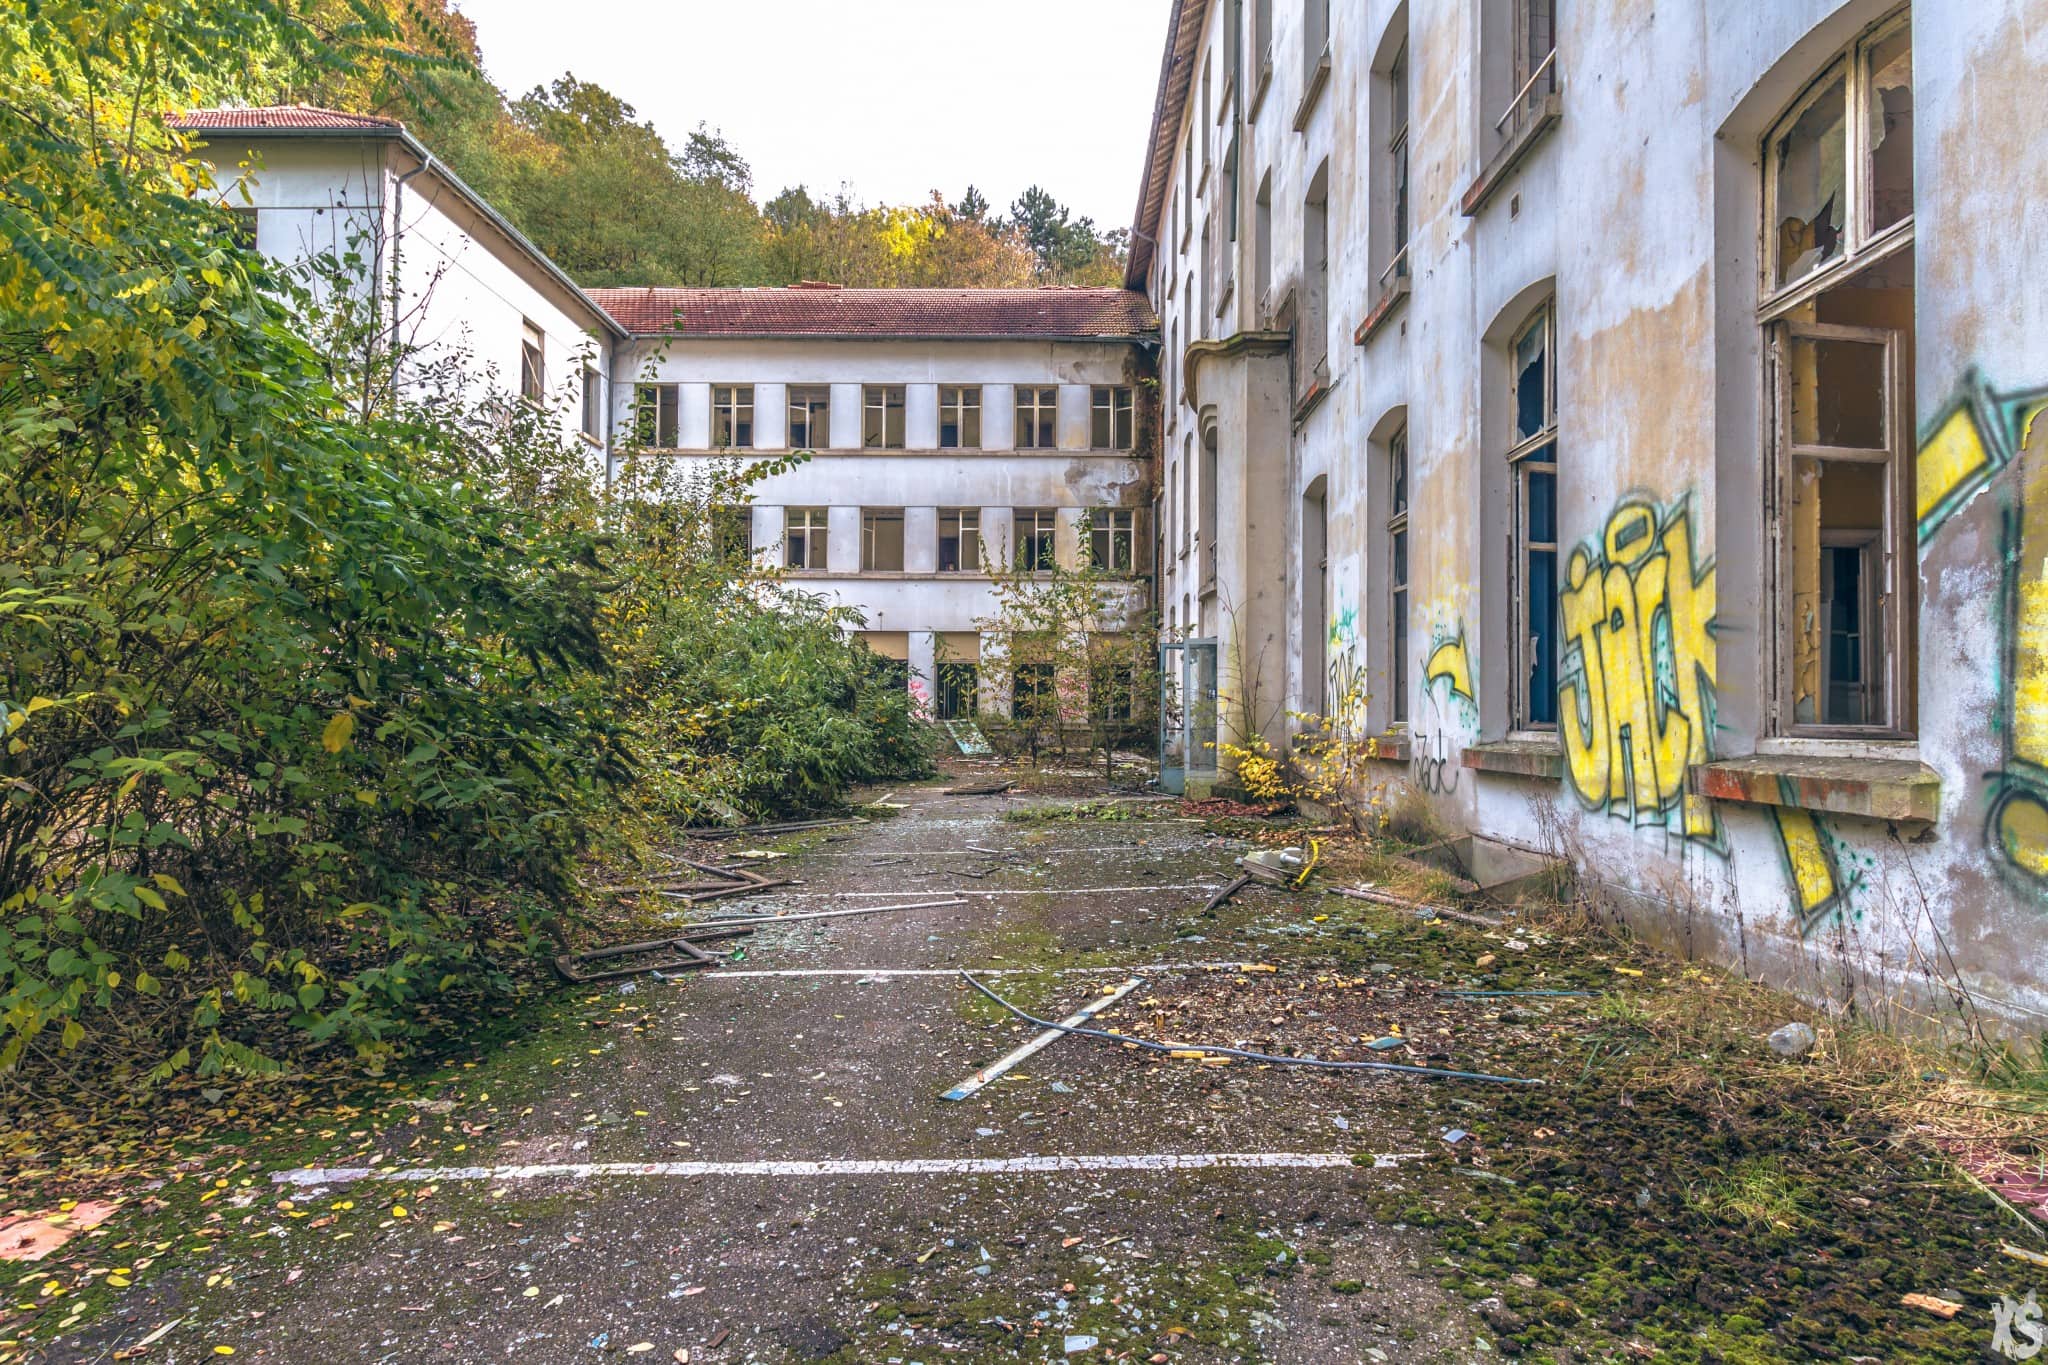 Sanatorium abandonné situé à Lay Saint Christophe | urbexsession.com/sanatorium-lay-saint-christophe | Urbex France